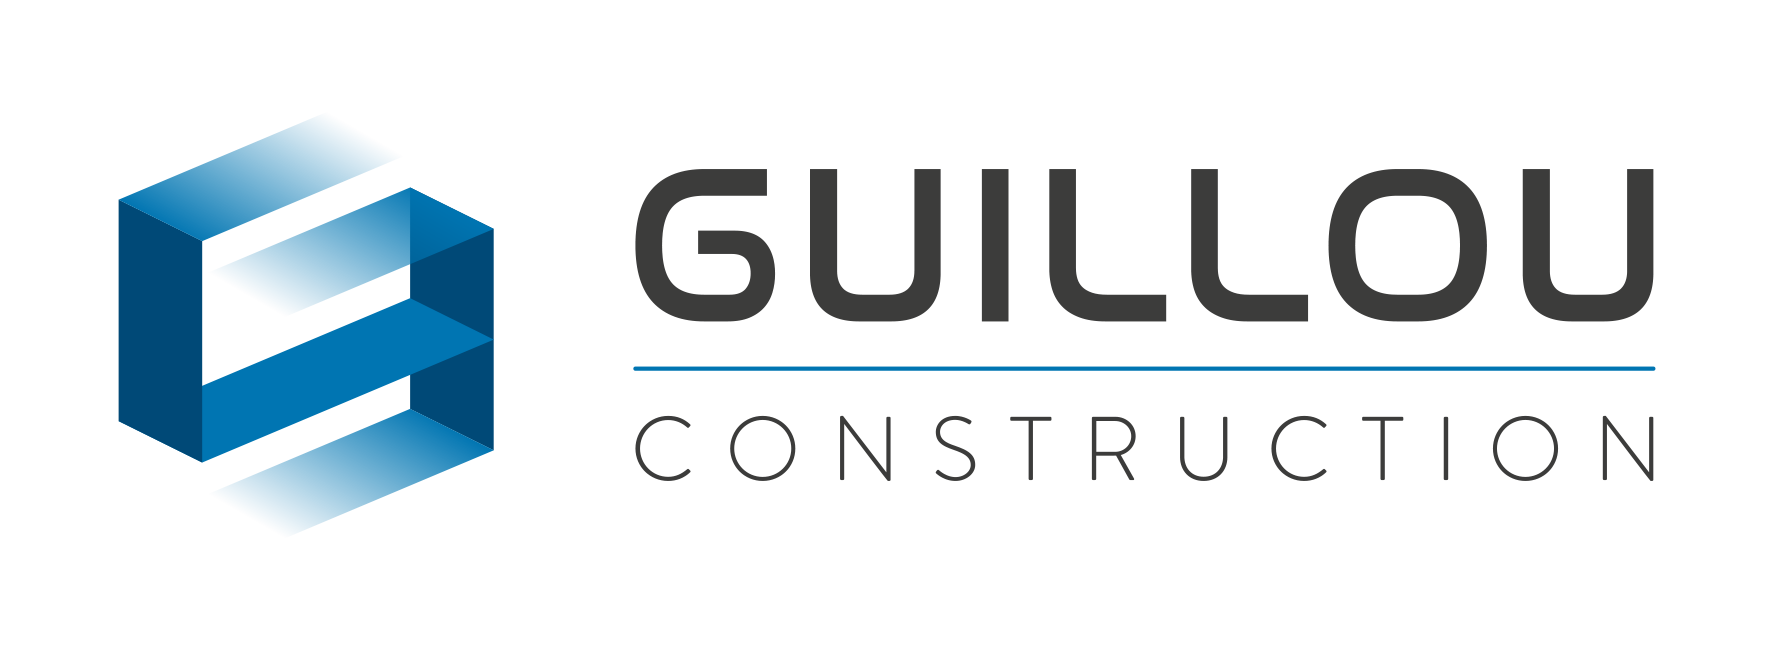 Guillou Construction